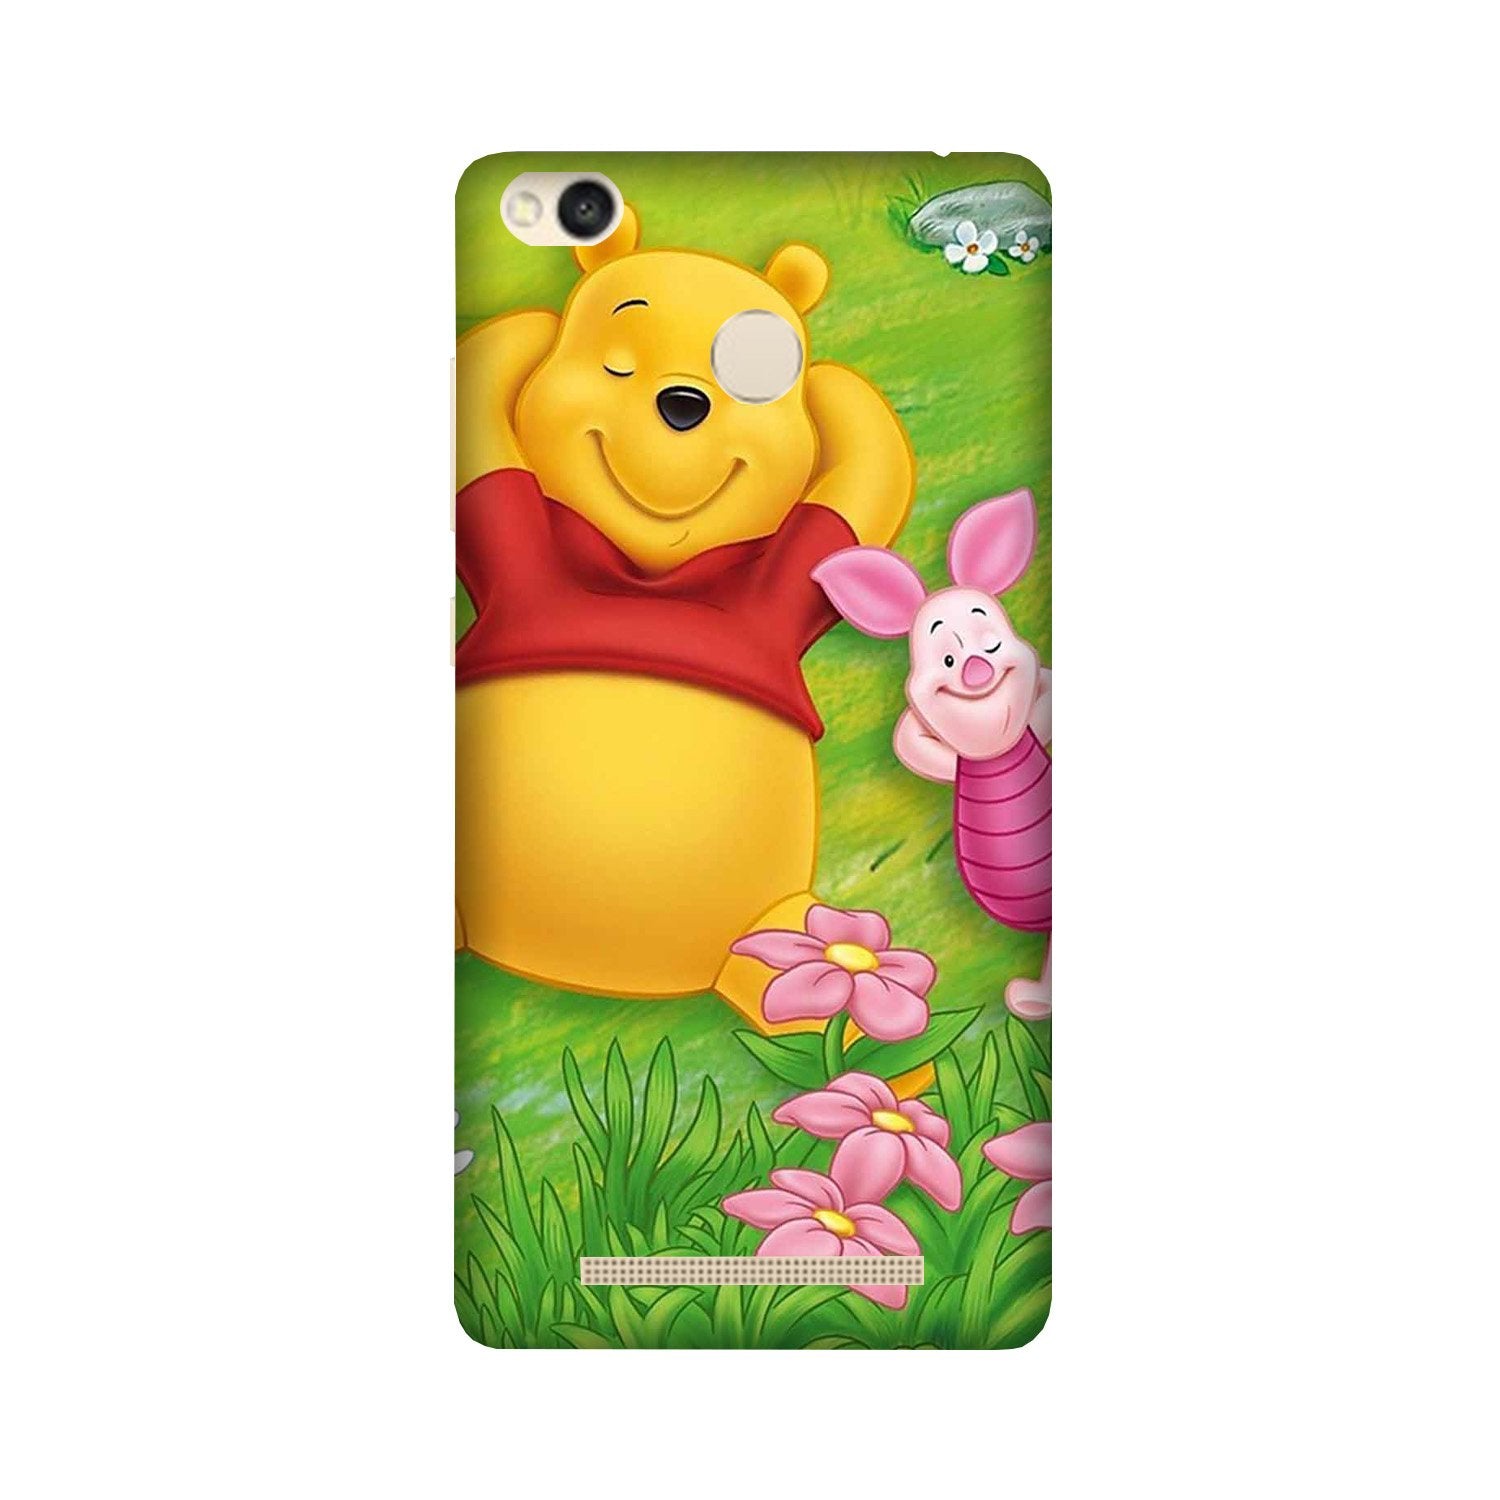 Winnie The Pooh Mobile Back Case for Redmi 3S Prime  (Design - 348)